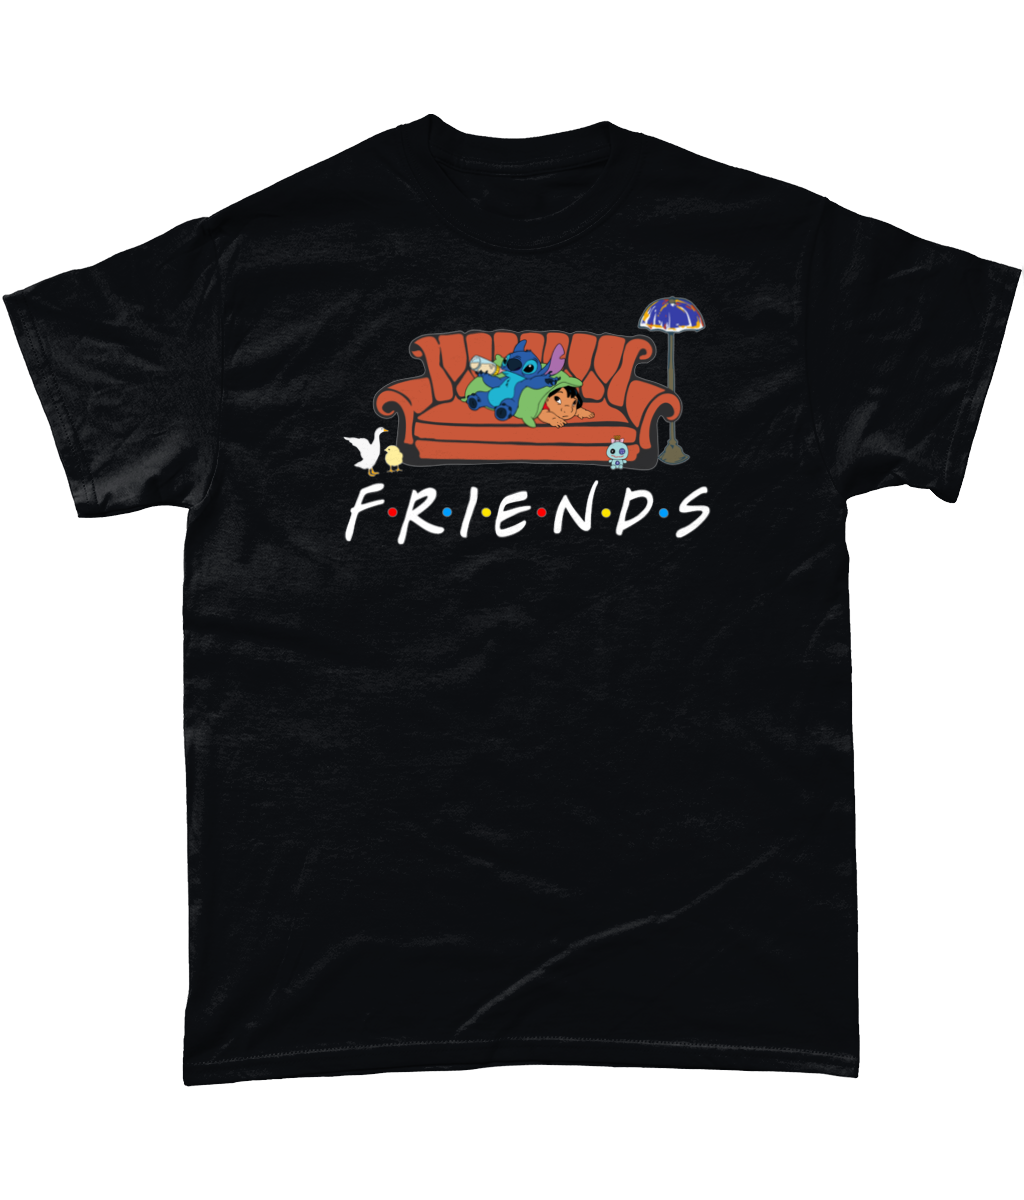 Stitch Friends: Unisex Tee